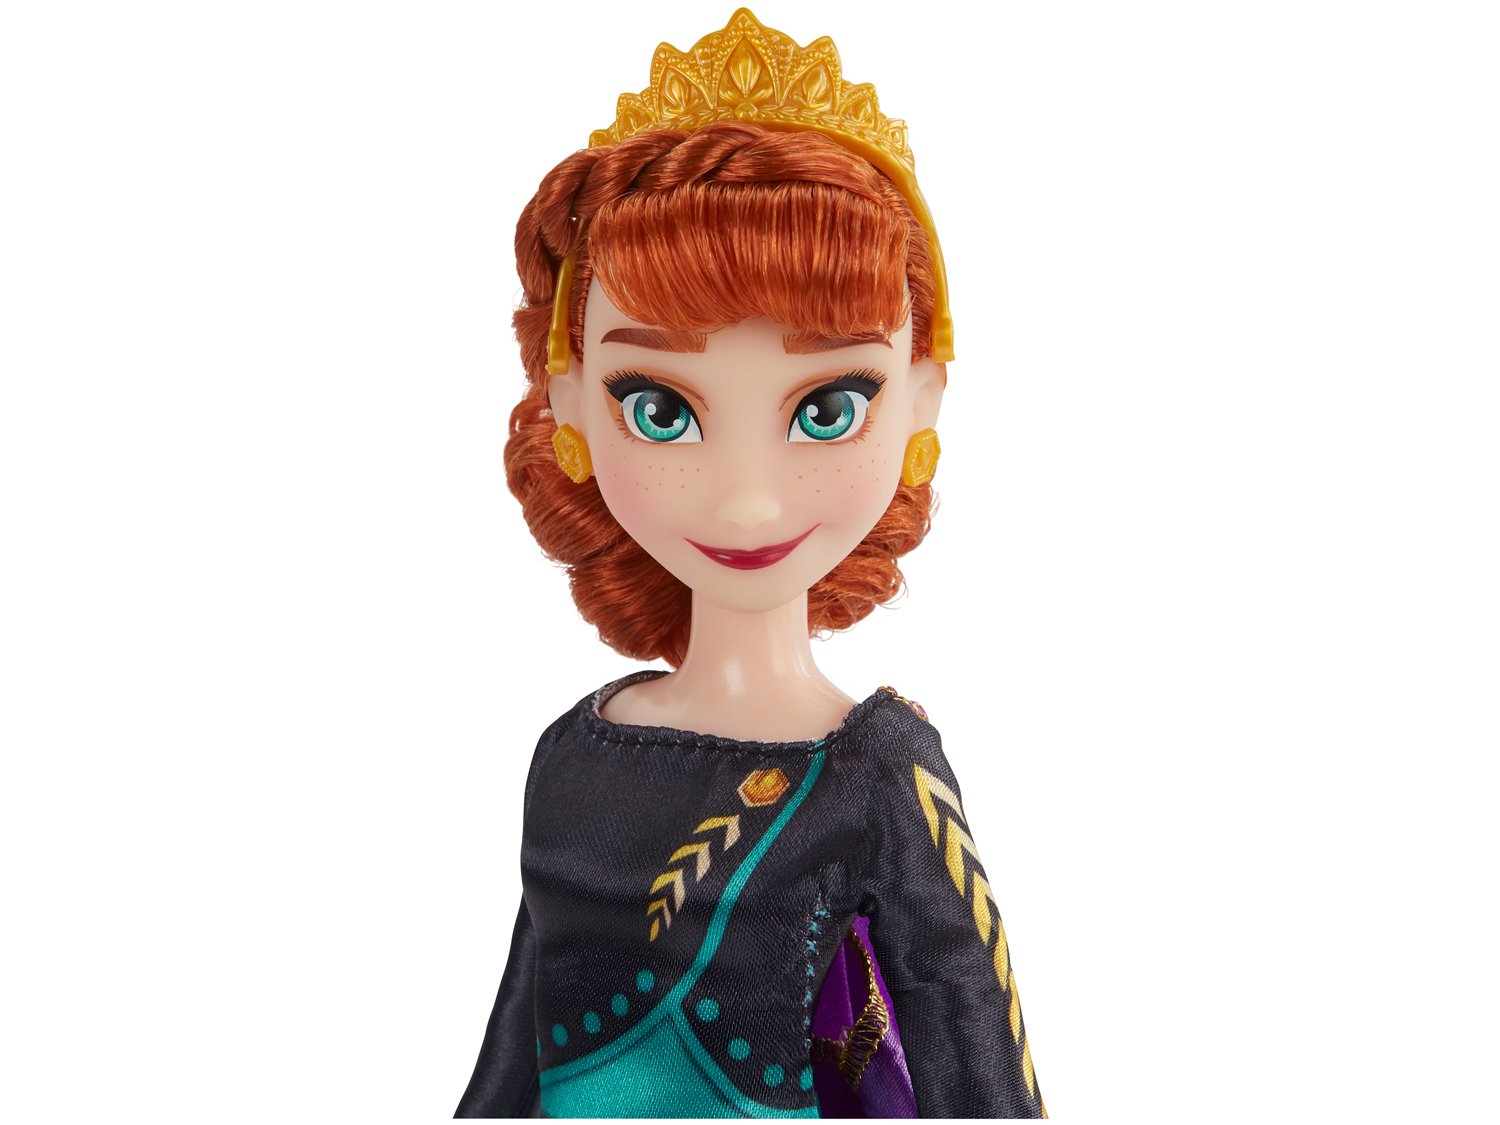 Boneca Disney Frozen 2 Anna Hasbro - 2